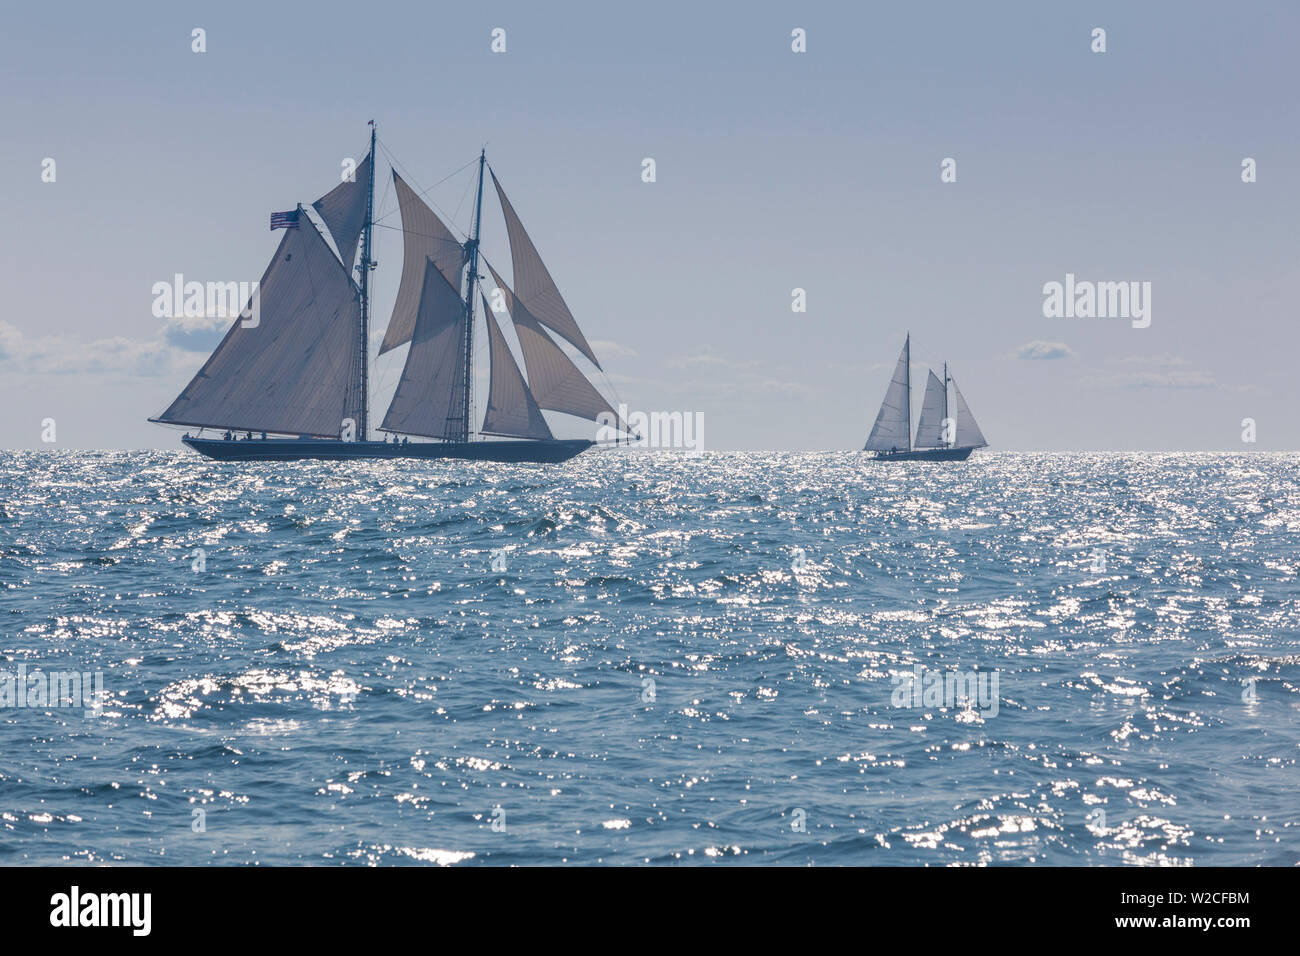 USA, Massachusetts, Cape Ann, Gloucester, America's Oldest Seaport, Gloucester Schooner Festival, schooner sailing ships Stock Photo